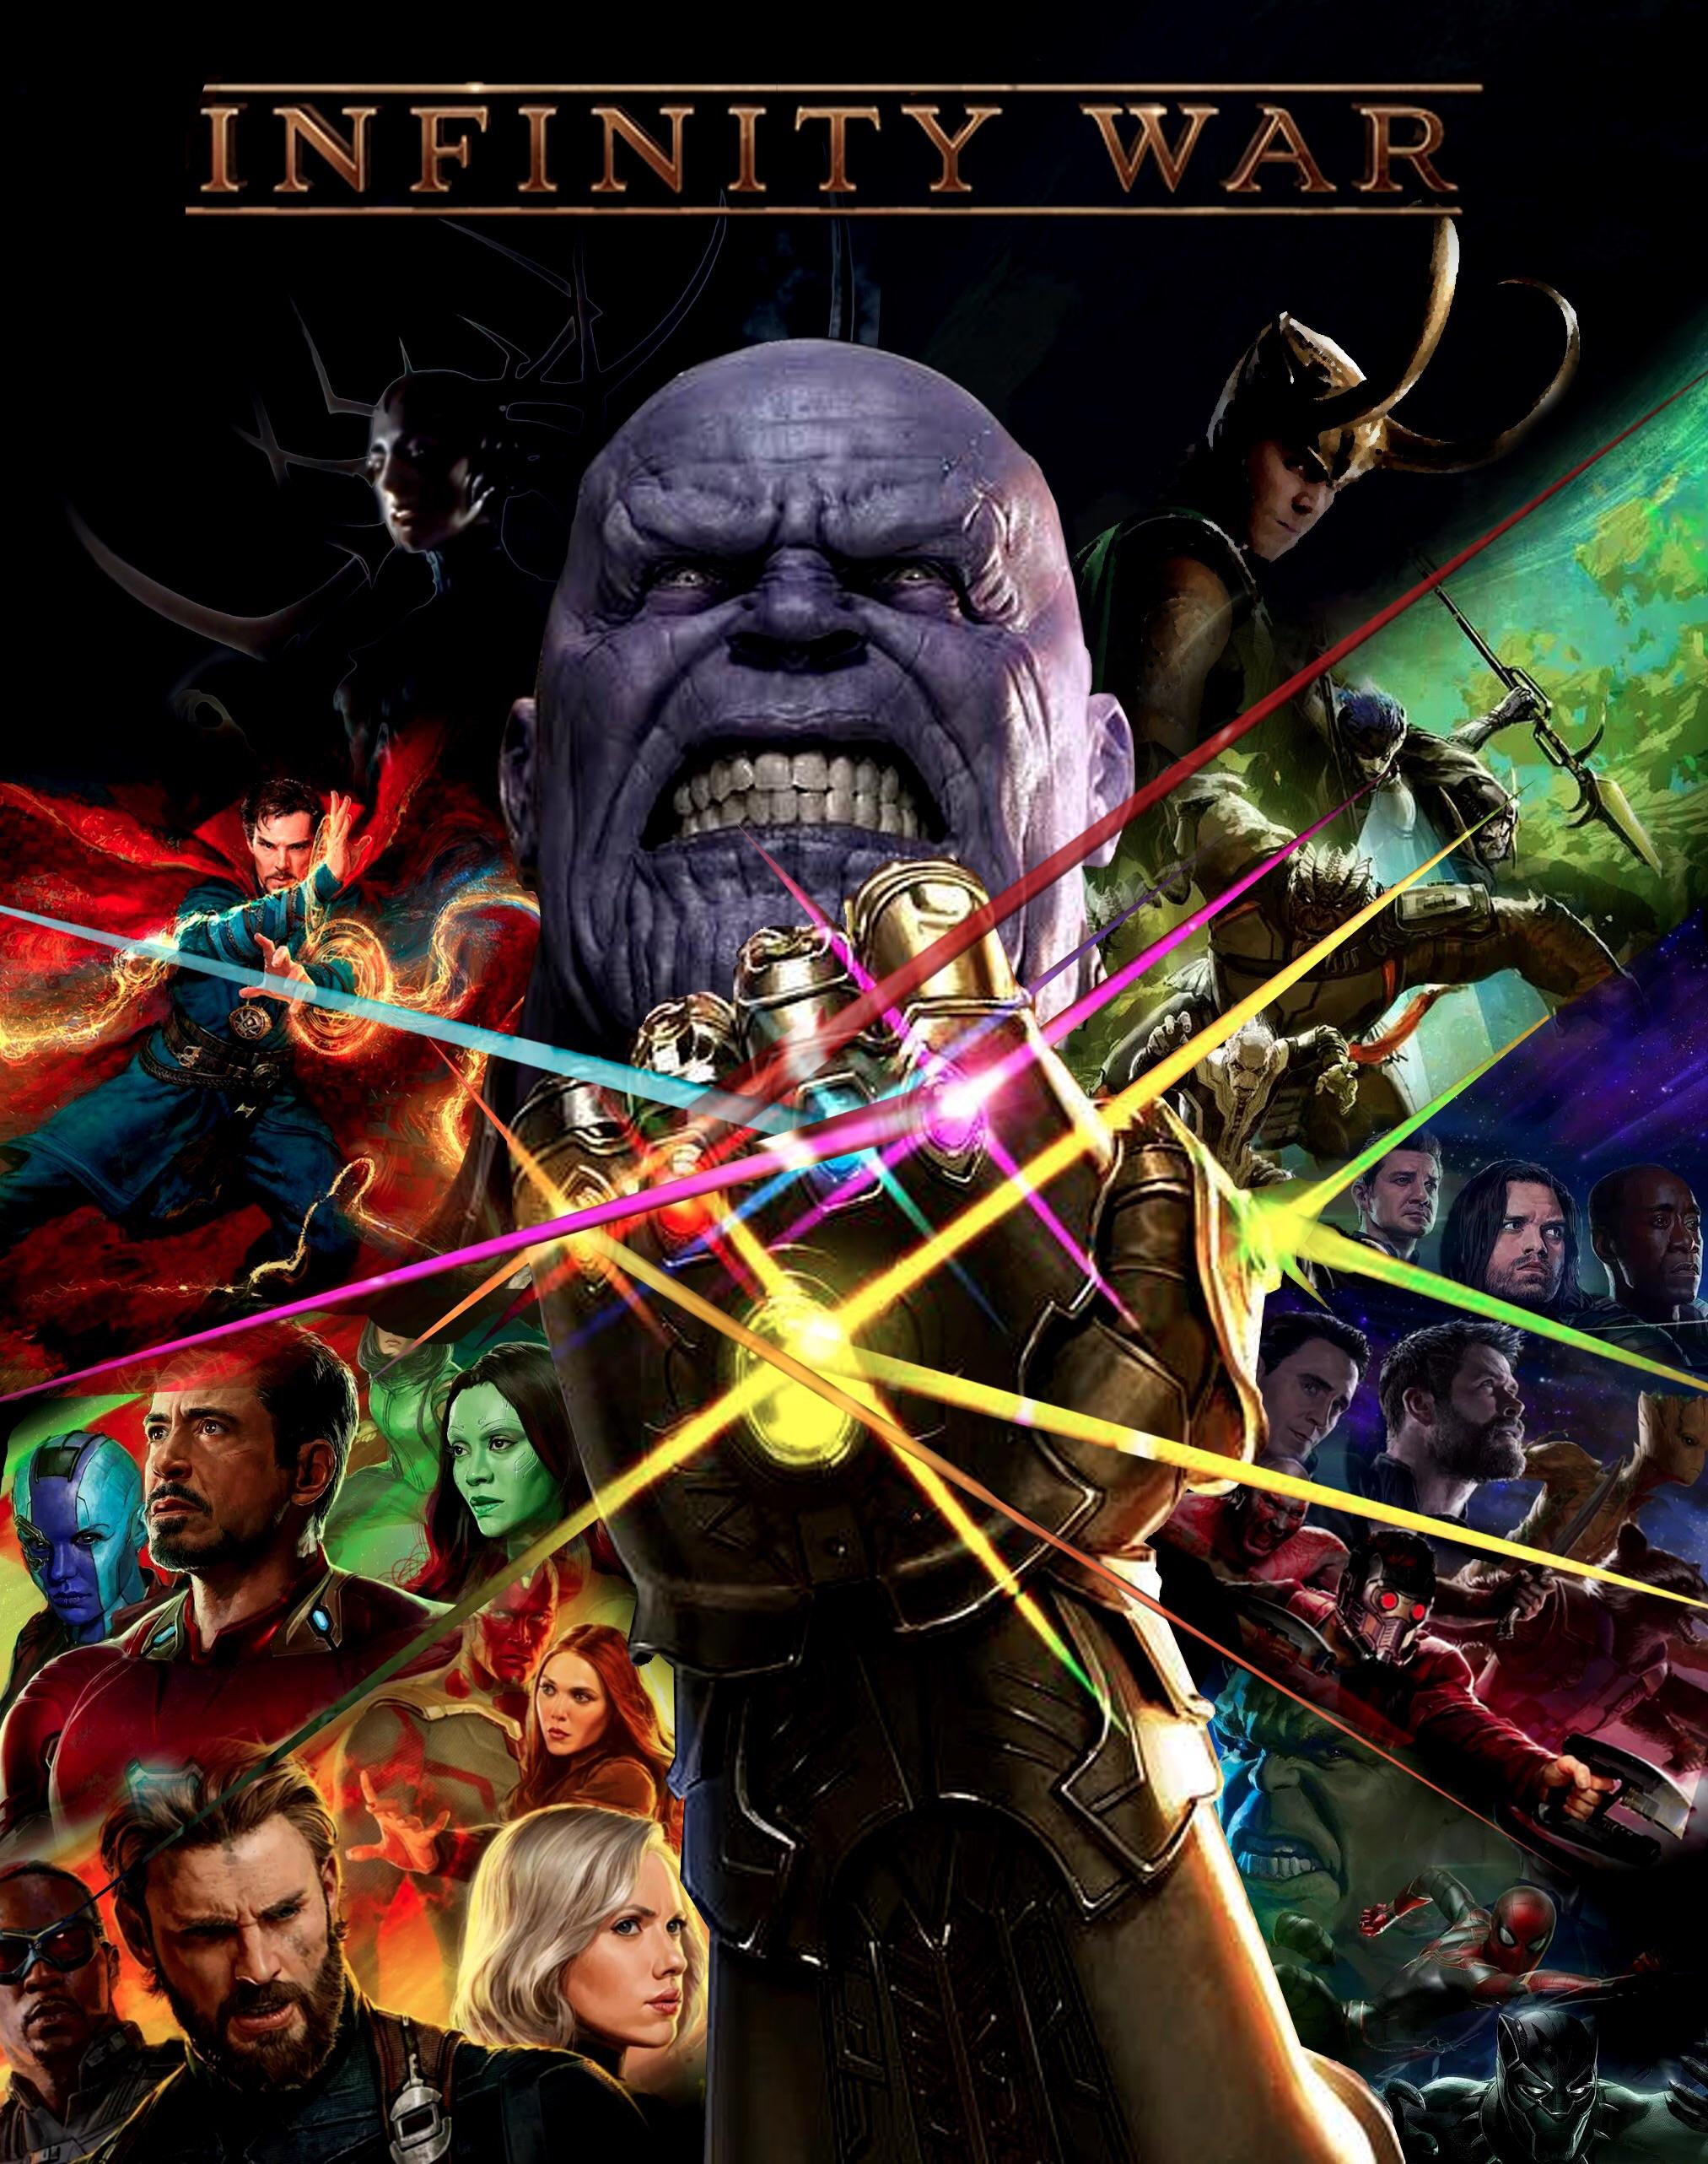 Avengers Infinity War Gauntlet Imax Poster Wallpapers